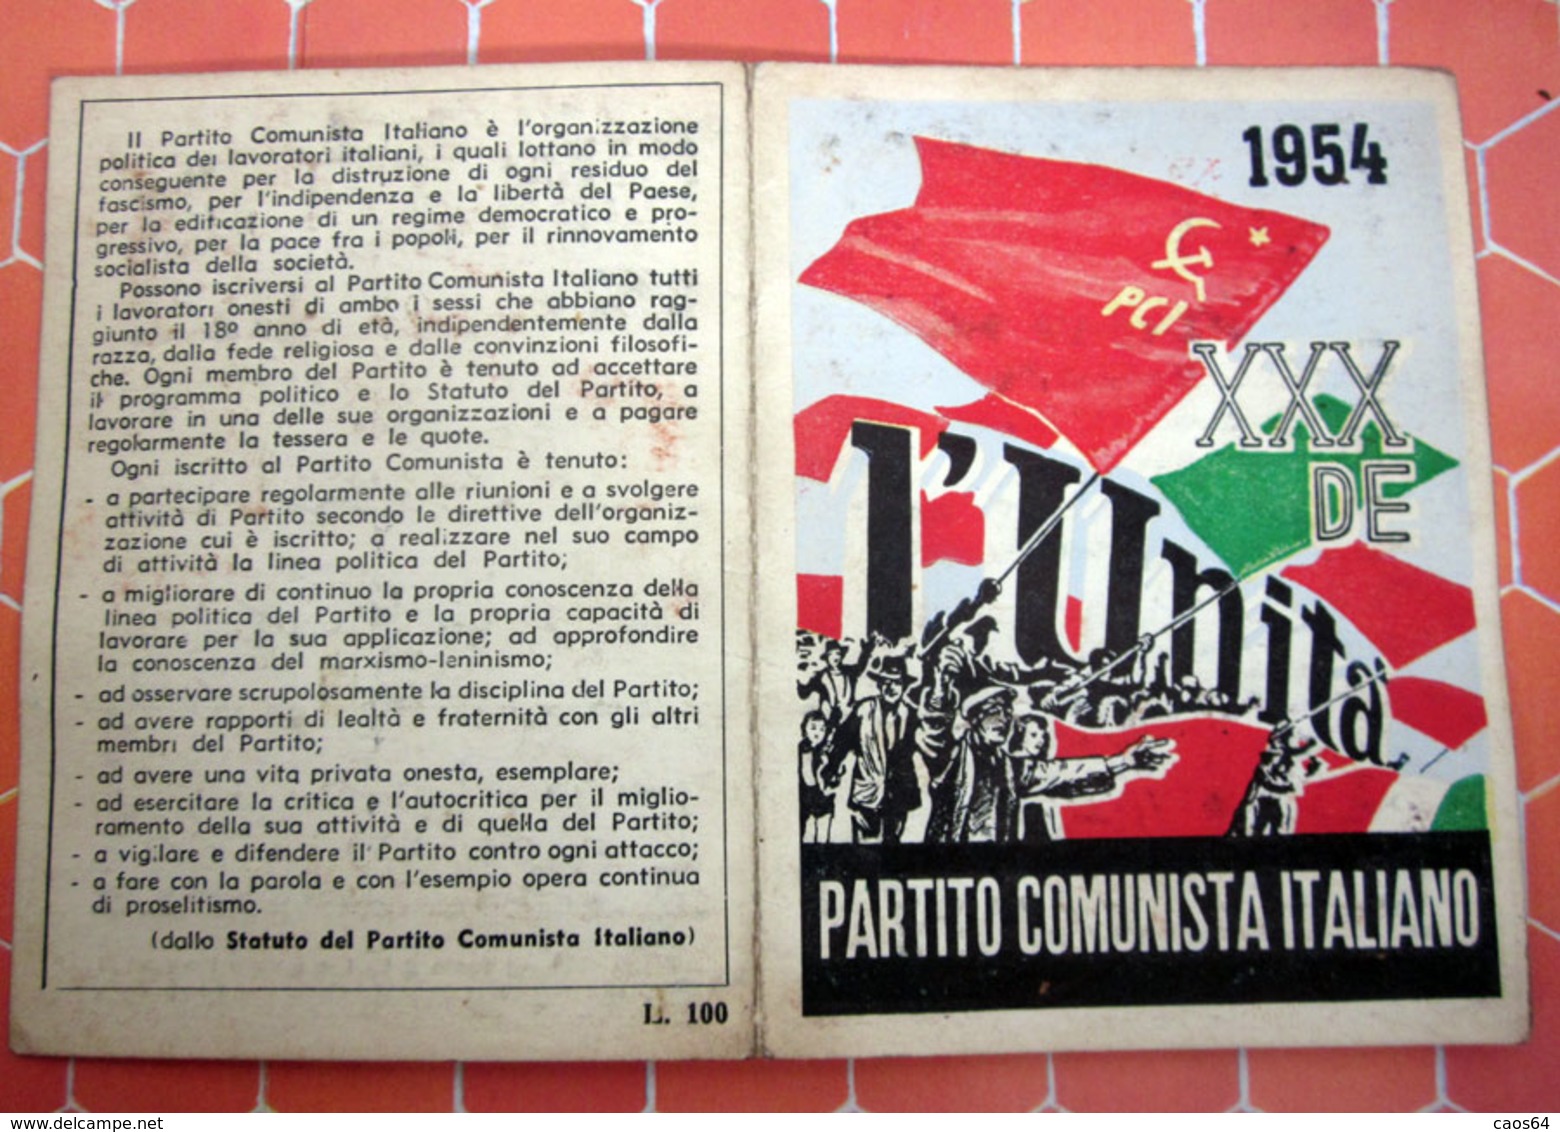 TESSERA PARTITO COMUNISTA ITALIANO 1954 TORINO CON BOLLINI - Cartes De Membre